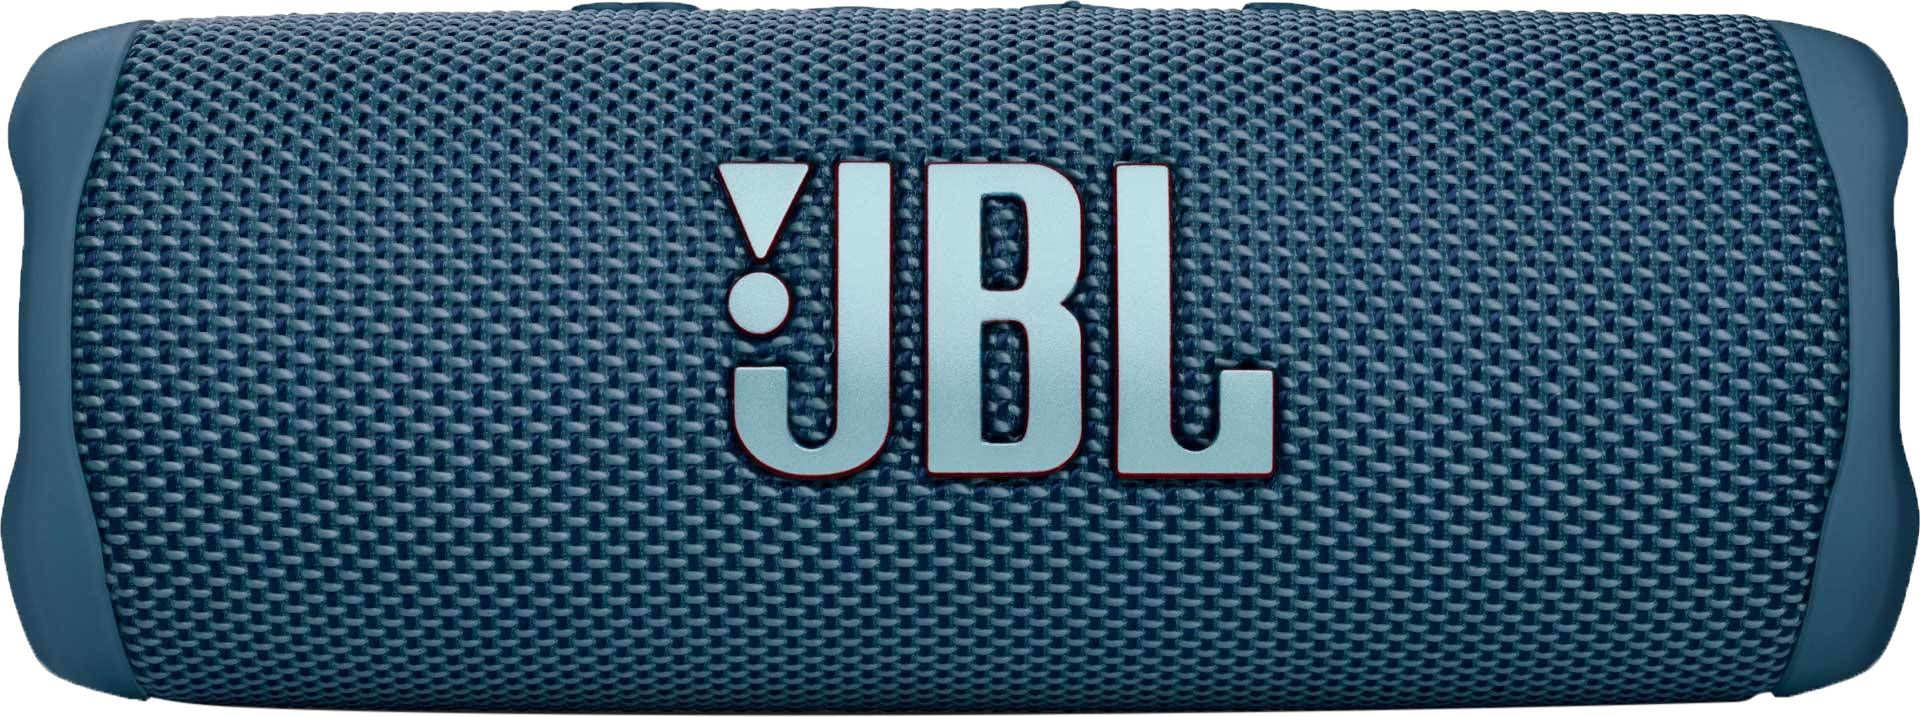 JBL Flip 6 Portable Wireless Speaker - Blue, Blue